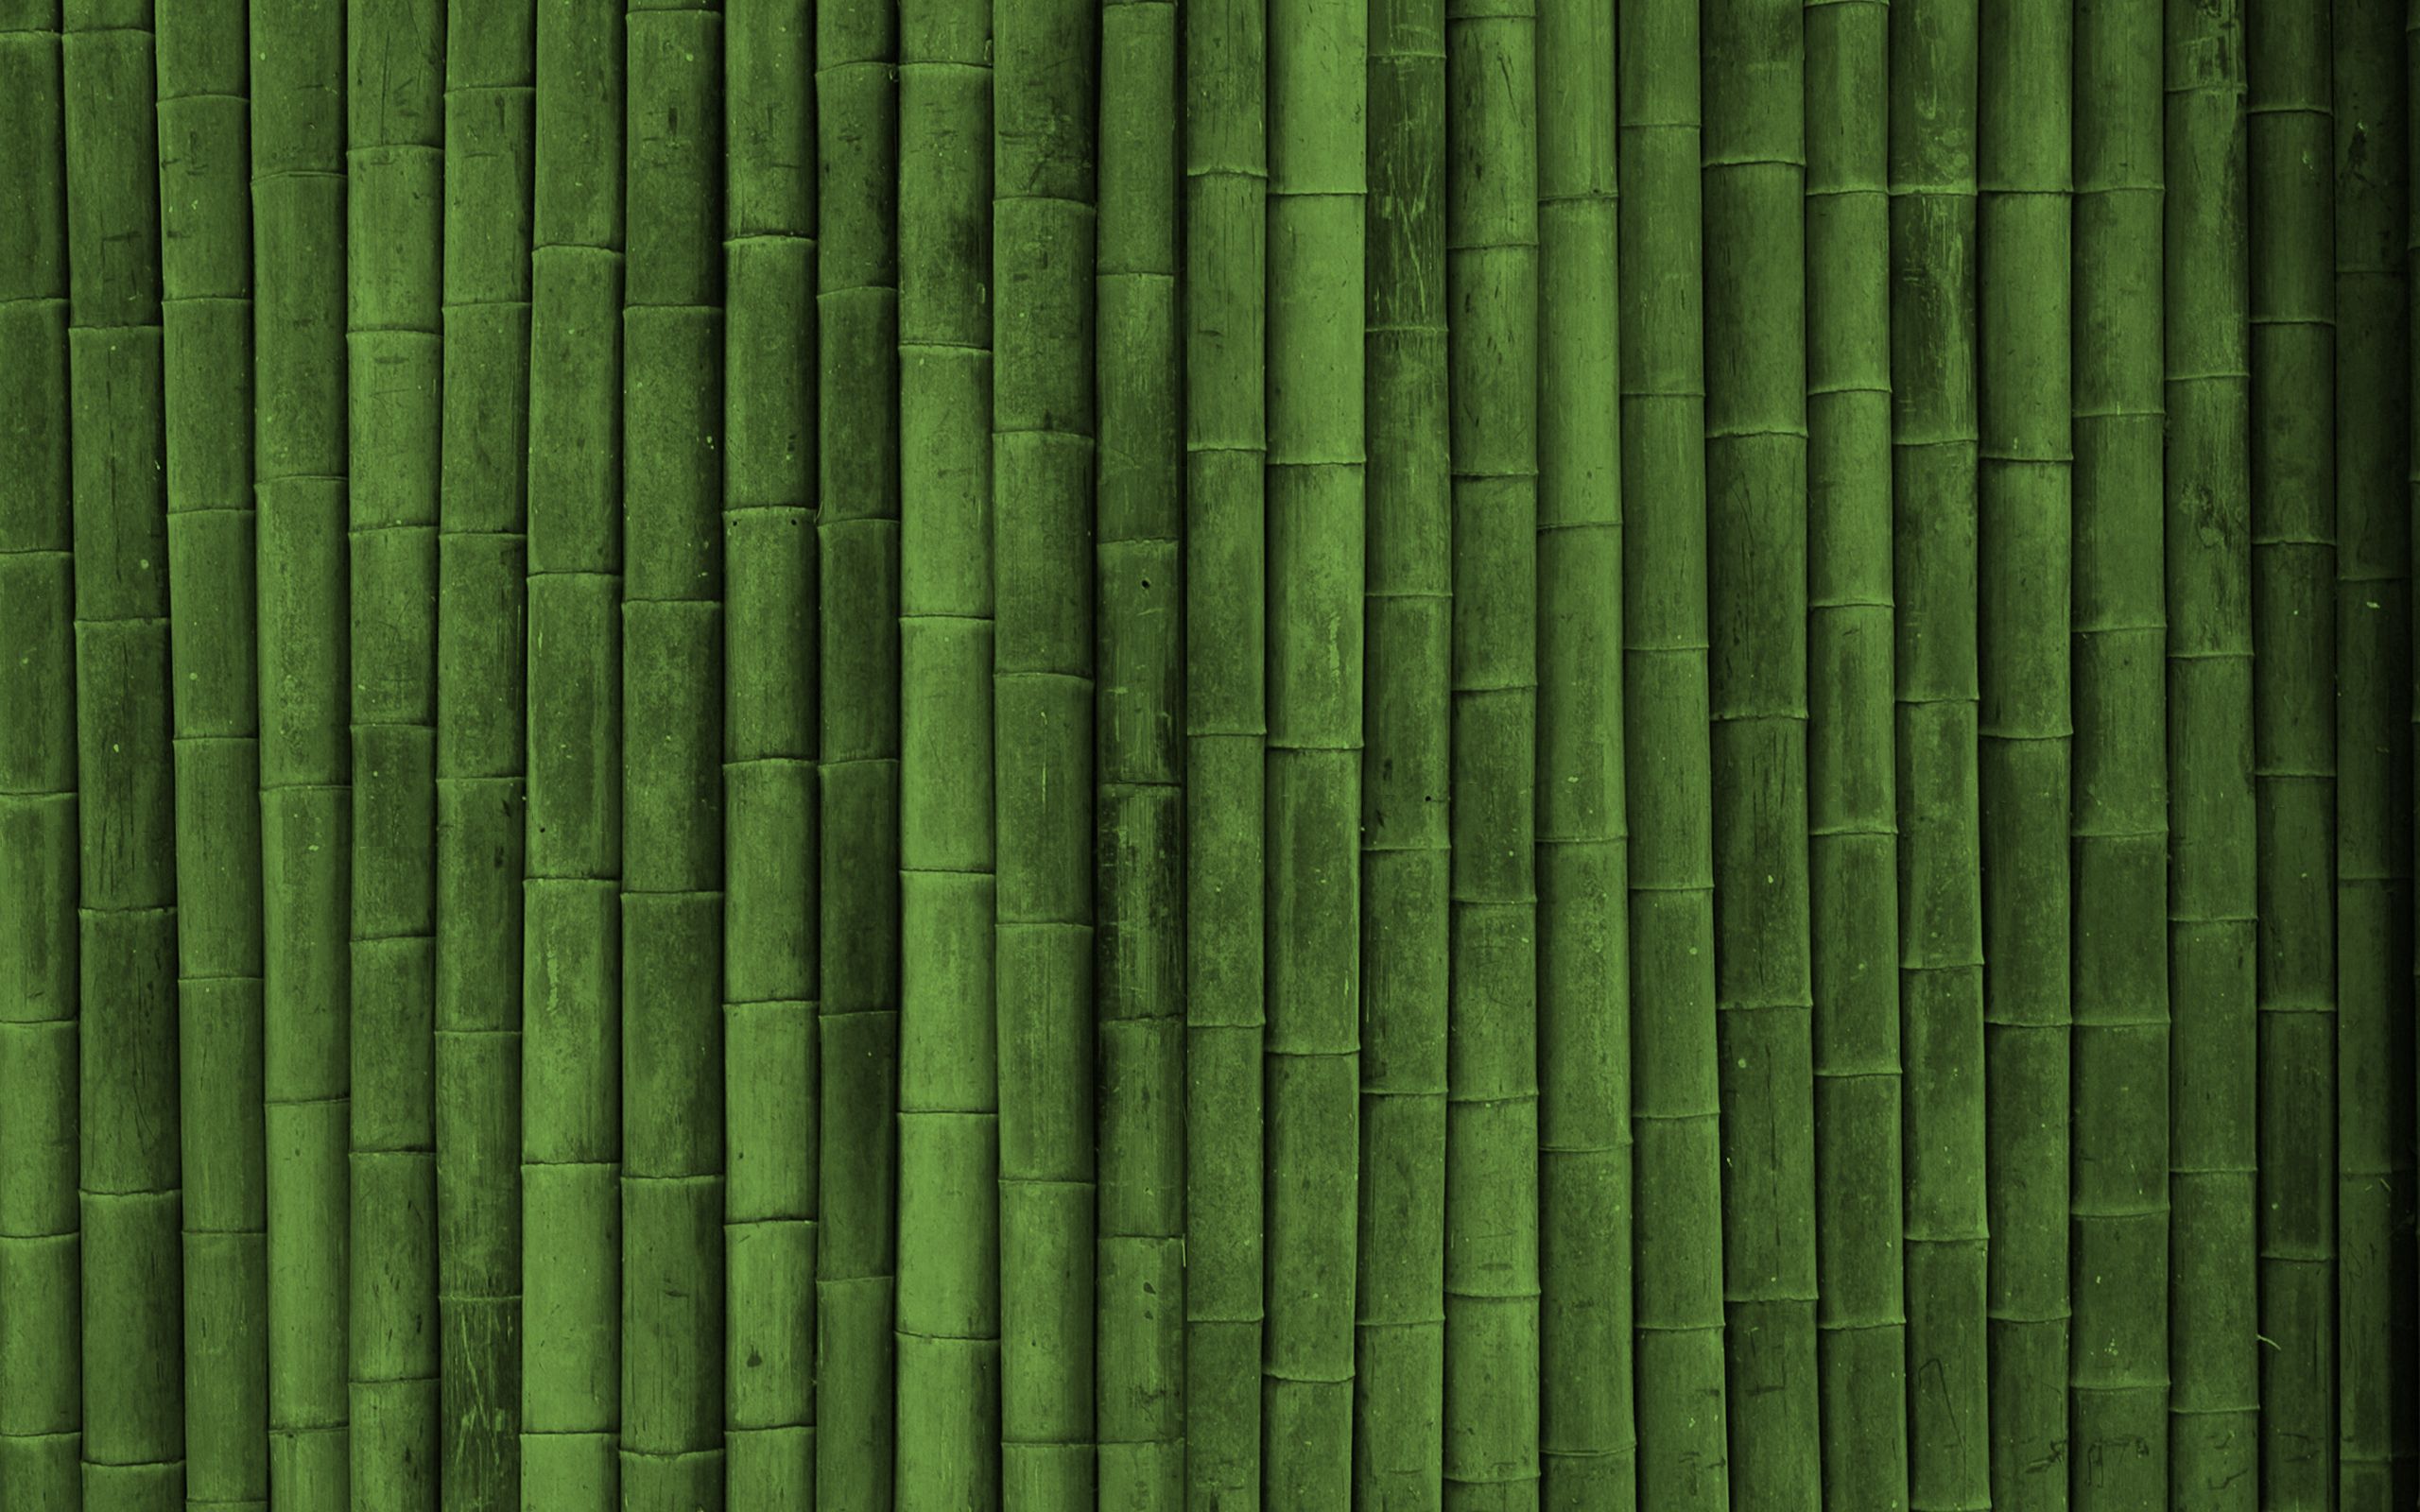 bamboo, green, vertical, texture, textures, sticks, stick